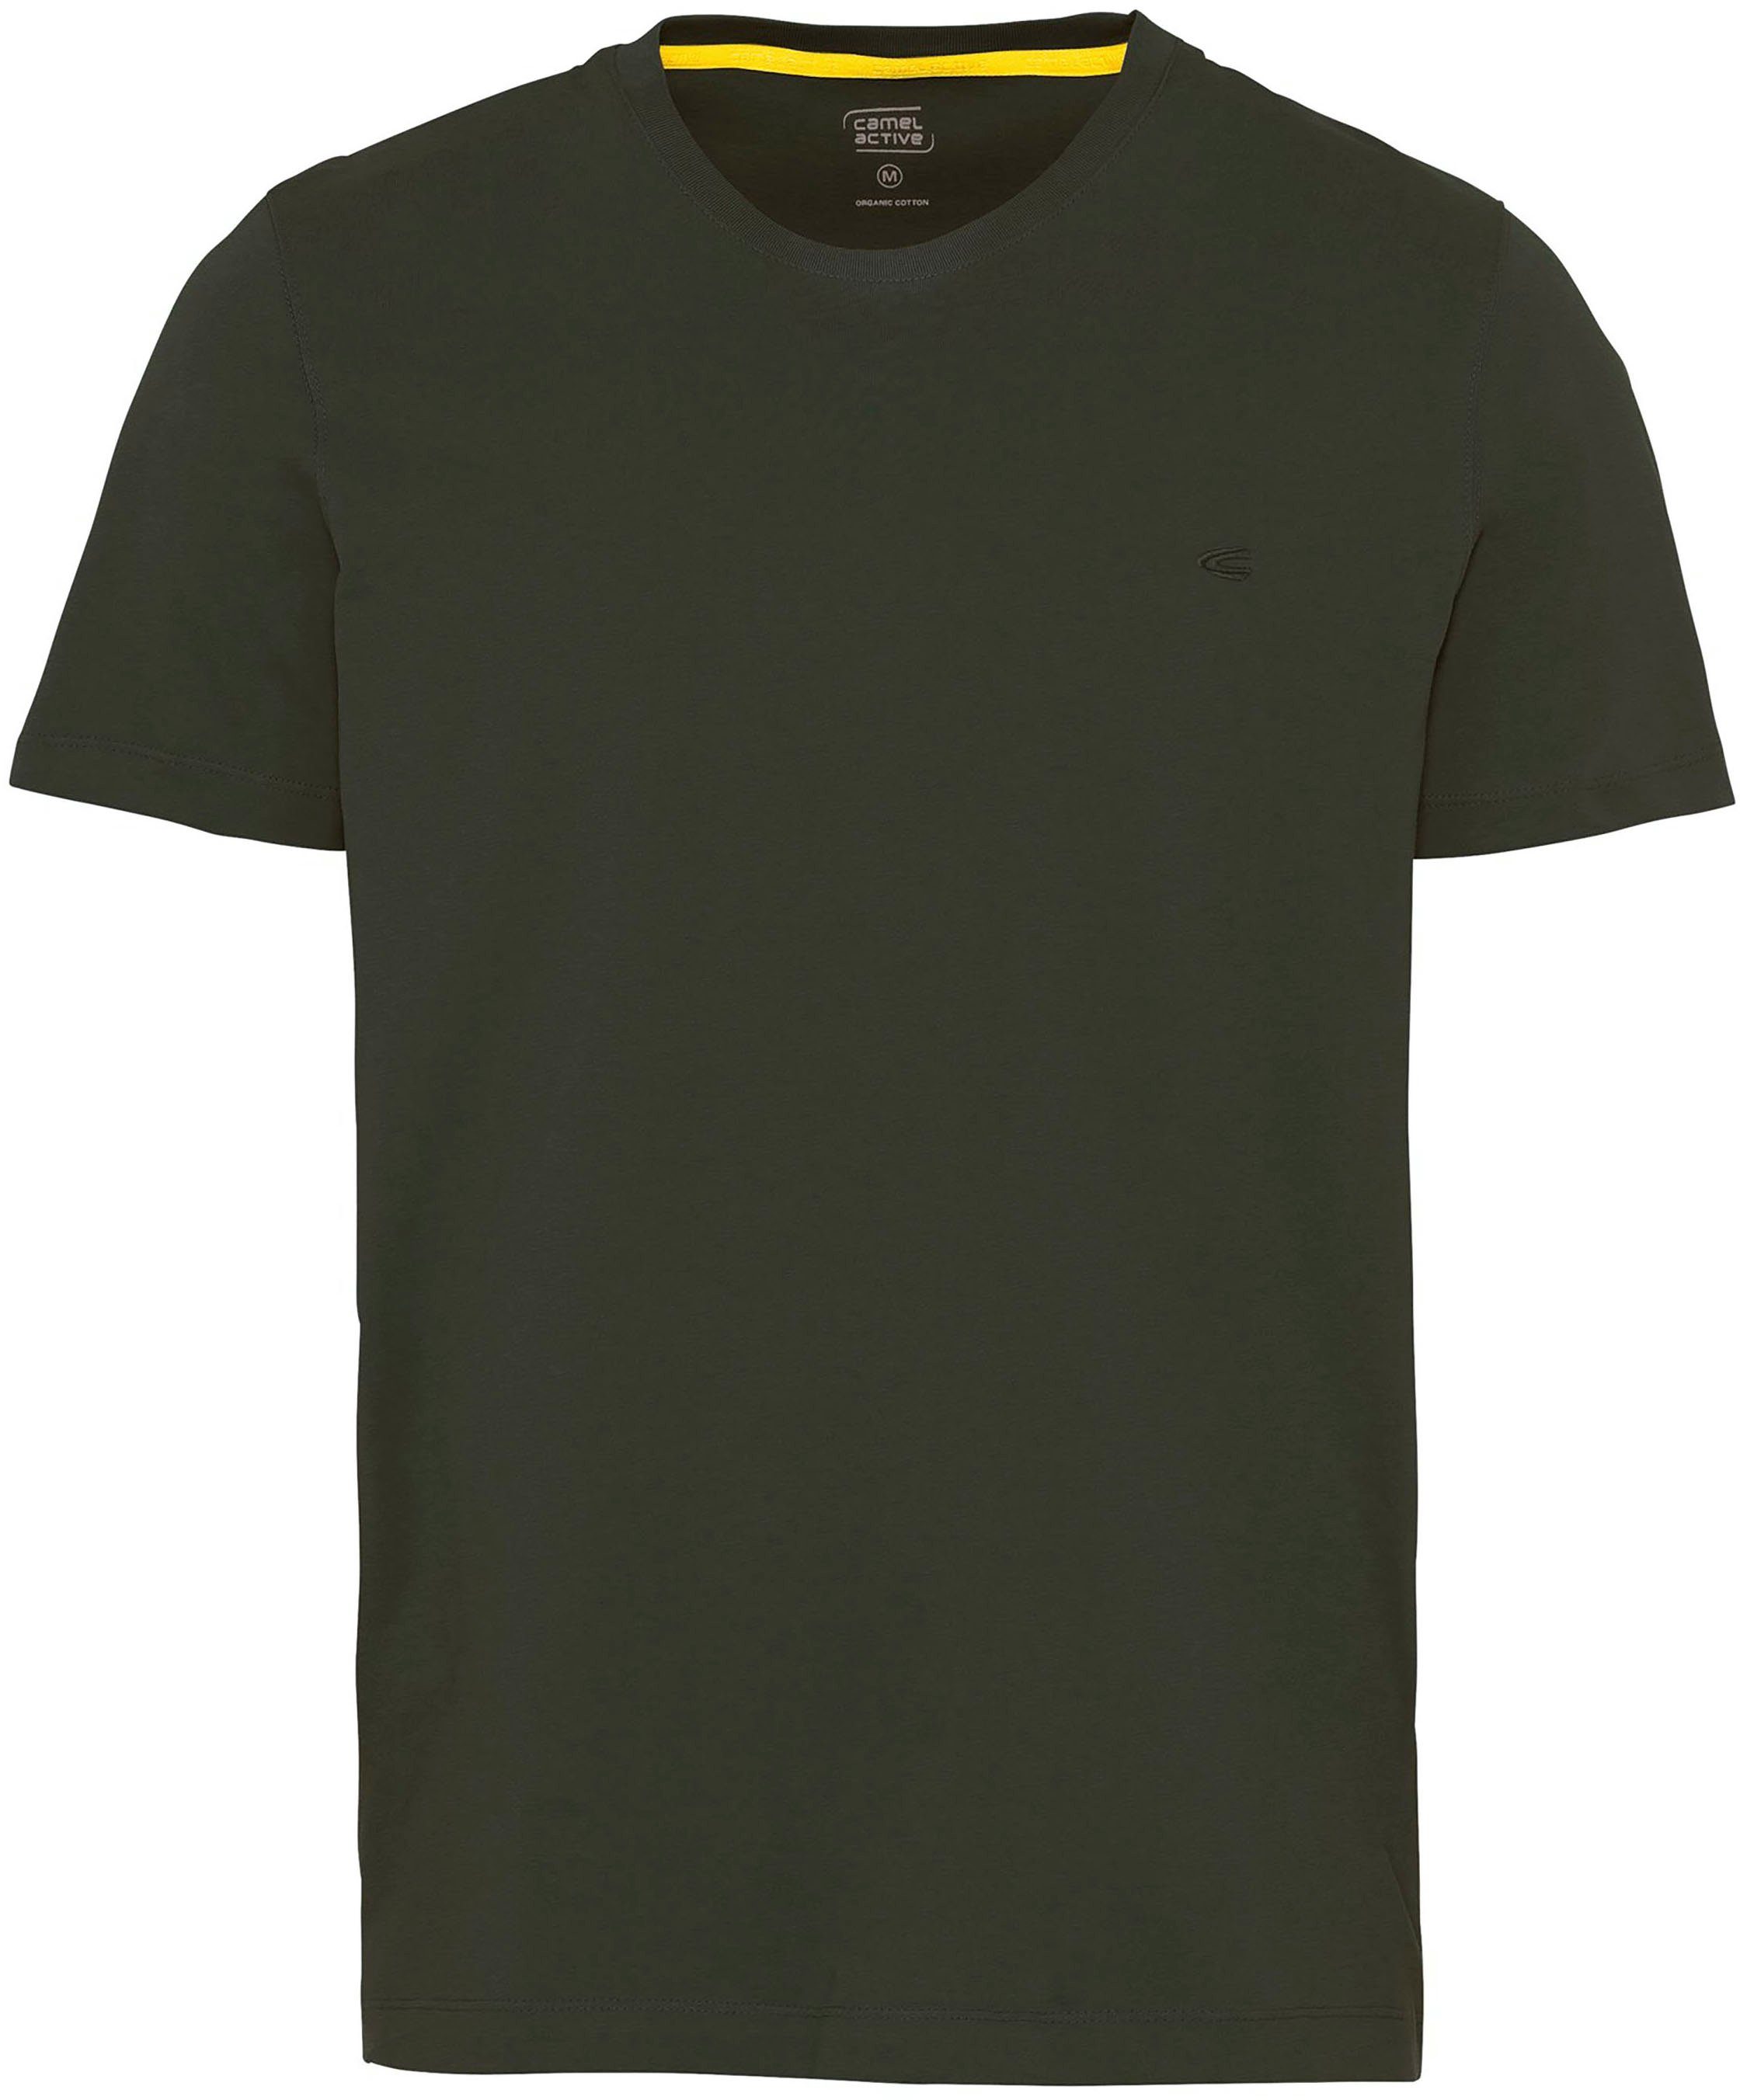 [Super günstiger Sonderpreis] camel active unifarben leaf T-Shirt green